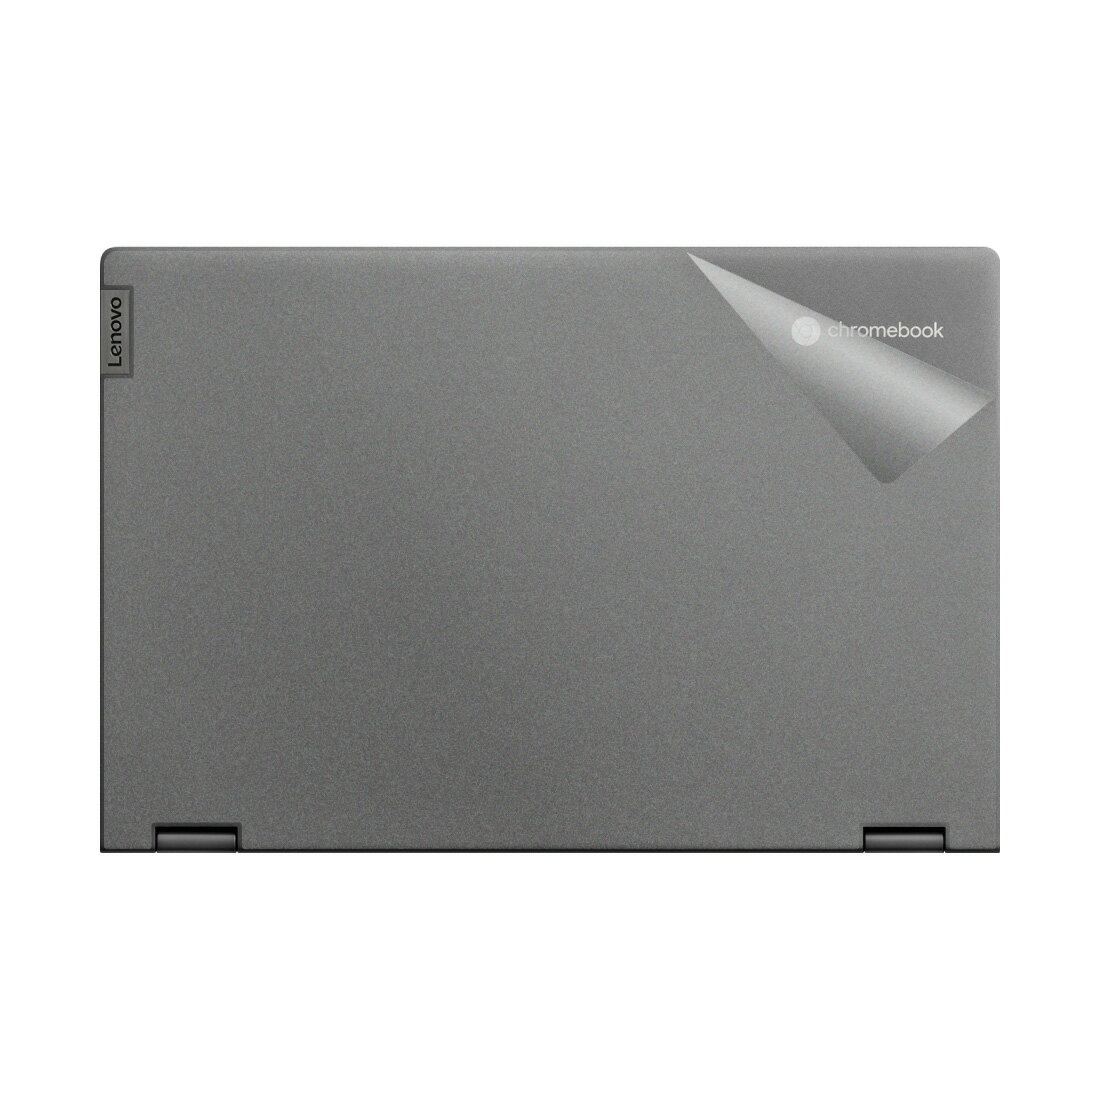 ●対応機種 : Lenovo IdeaPad Flex 5 シリーズ Flex550i Chromebook (13.3)●内容量 : 天面用1枚●すりガラス調の透明PVC素材のフィルムで機器をキズや汚れからしっかり保護！●機種毎の専用サイズにカット済みですので、商品が届いたらそのまま貼るだけと手軽です。【貼り付け練習用の素材見本付き】【ポスト投函送料無料】商品は【ポスト投函発送 (追跡可能メール便)】で発送します。お急ぎ、配達日時を指定されたい方は以下のクーポンを同時購入ください。【お急ぎ便クーポン】　プラス110円(税込)で速達扱いでの発送。お届けはポストへの投函となります。【配達日時指定クーポン】　プラス550円(税込)で配達日時を指定し、宅配便で発送させていただきます。【お急ぎ便クーポン】はこちらをクリック【配達日時指定クーポン】はこちらをクリック&nbsp;※機種毎の専用サイズにカット済みです。フィルムの貼り付けに便利フェルト付スキージー(10cm幅)ラップフィルムや保護フィルムを貼る際に便利な「フェルト付スキージー(別売)」も販売中です。●すりガラス調の透明PVC素材のフィルムで機器をキズや汚れからしっかり保護！スキンシール【Body Shield Frosted】は、表面に僅かな凸凹があり、さらっとした手触りの、すりガラスのような透明PVC素材のフィルムです。大切な機器をキズや汚れからもしっかり保護できます!!●機器の色やデザインを活かせます！【Body Shield Frosted】は透明な素材ですので、機器の色を活かせます。また、デザインにあまり影響しません。すりガラス効果で光の反射を抑え、マットな感じになるので、元の機器とひとあじ違った印象に変えることができます。●0.18mmの厚みなので、機器のフォルムや重さに影響しません【Body Shield Frosted】の厚さは0.18mmですので、機器のフォルムや重量などに影響しません。●機器にぴったり！専用サイズ高品質なフィルムをそれぞれの機種に合わせ、ぴったりの専用サイズに加工していますので、ご自身でカットする必要もなく、位置を合わせて貼るだけと簡単です。●強粘着タイプですので、機器にしっかりと貼り付きます！強粘着タイプですので、表面が梨地加工されているような機器でも、しっかりと貼り付きます。※透明な素材のため、貼り付ける機器の色によっては残った気泡が目立つ場合がございます。できるだけ気泡が残らないよう注意して貼り付け作業を行ってください。※貼り付け練習用の素材見本付きです商品には貼り付け練習用の素材見本が付属しています。機器への貼り付け具合などを確認してから、本番の貼り付け作業を行うことができます。■ 免責事項 ■・ ご使用方法、ご使用環境、人為的な外部要因、事故等の不可抗力などに起因する不具合など・ 製品の貼り付け作業機器から製品をはがす際などに発生した傷および汚れ、破損、損傷など・ 貼り付け作業またはご使用環境下で生じた製品および機器の故障、傷、色調変化、汚れの付着など・ 人災、天災、地変等、製品の品質に起因しない事由により発生した不具合など・ 溶剤、クリーナー、ワックス、その他薬品等、影響を及ぼす可能性のある物質による不具合など●本製品は機器の表面を装飾し、スリキズなどから保護するための商品です。一般的なユーザーが使用することが前提で、業務用途など厳しい環境下での利用を目的としたものではありません。●本製品はご自身の判断にて貼り付け作業等を行っていただくDIY製品です。本製品を利用したことによる機器の破損、損傷、故障、その他損害については有形/無形を問わず一切の責任を負いかねます。●品質向上のため、仕様などを予告なく変更する場合があります。予めご了承ください。●記載されている会社名・商品名等は各社の商標または登録商標です。